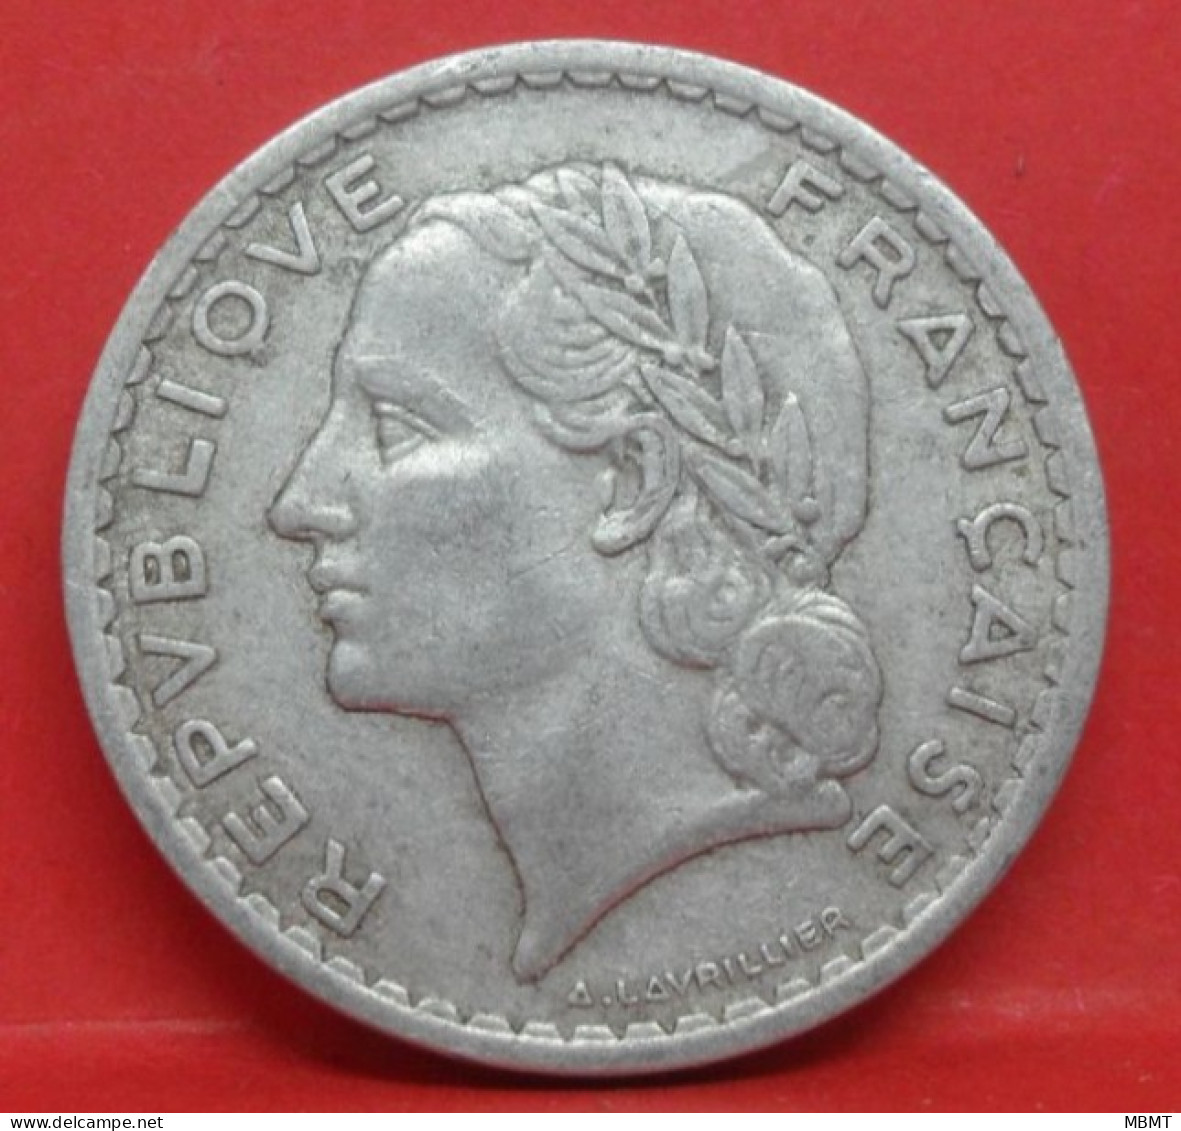 5 Francs Lavrillier Alu 1947 Ouvert - TB - Pièce Monnaie France - Article N°835 - 5 Francs